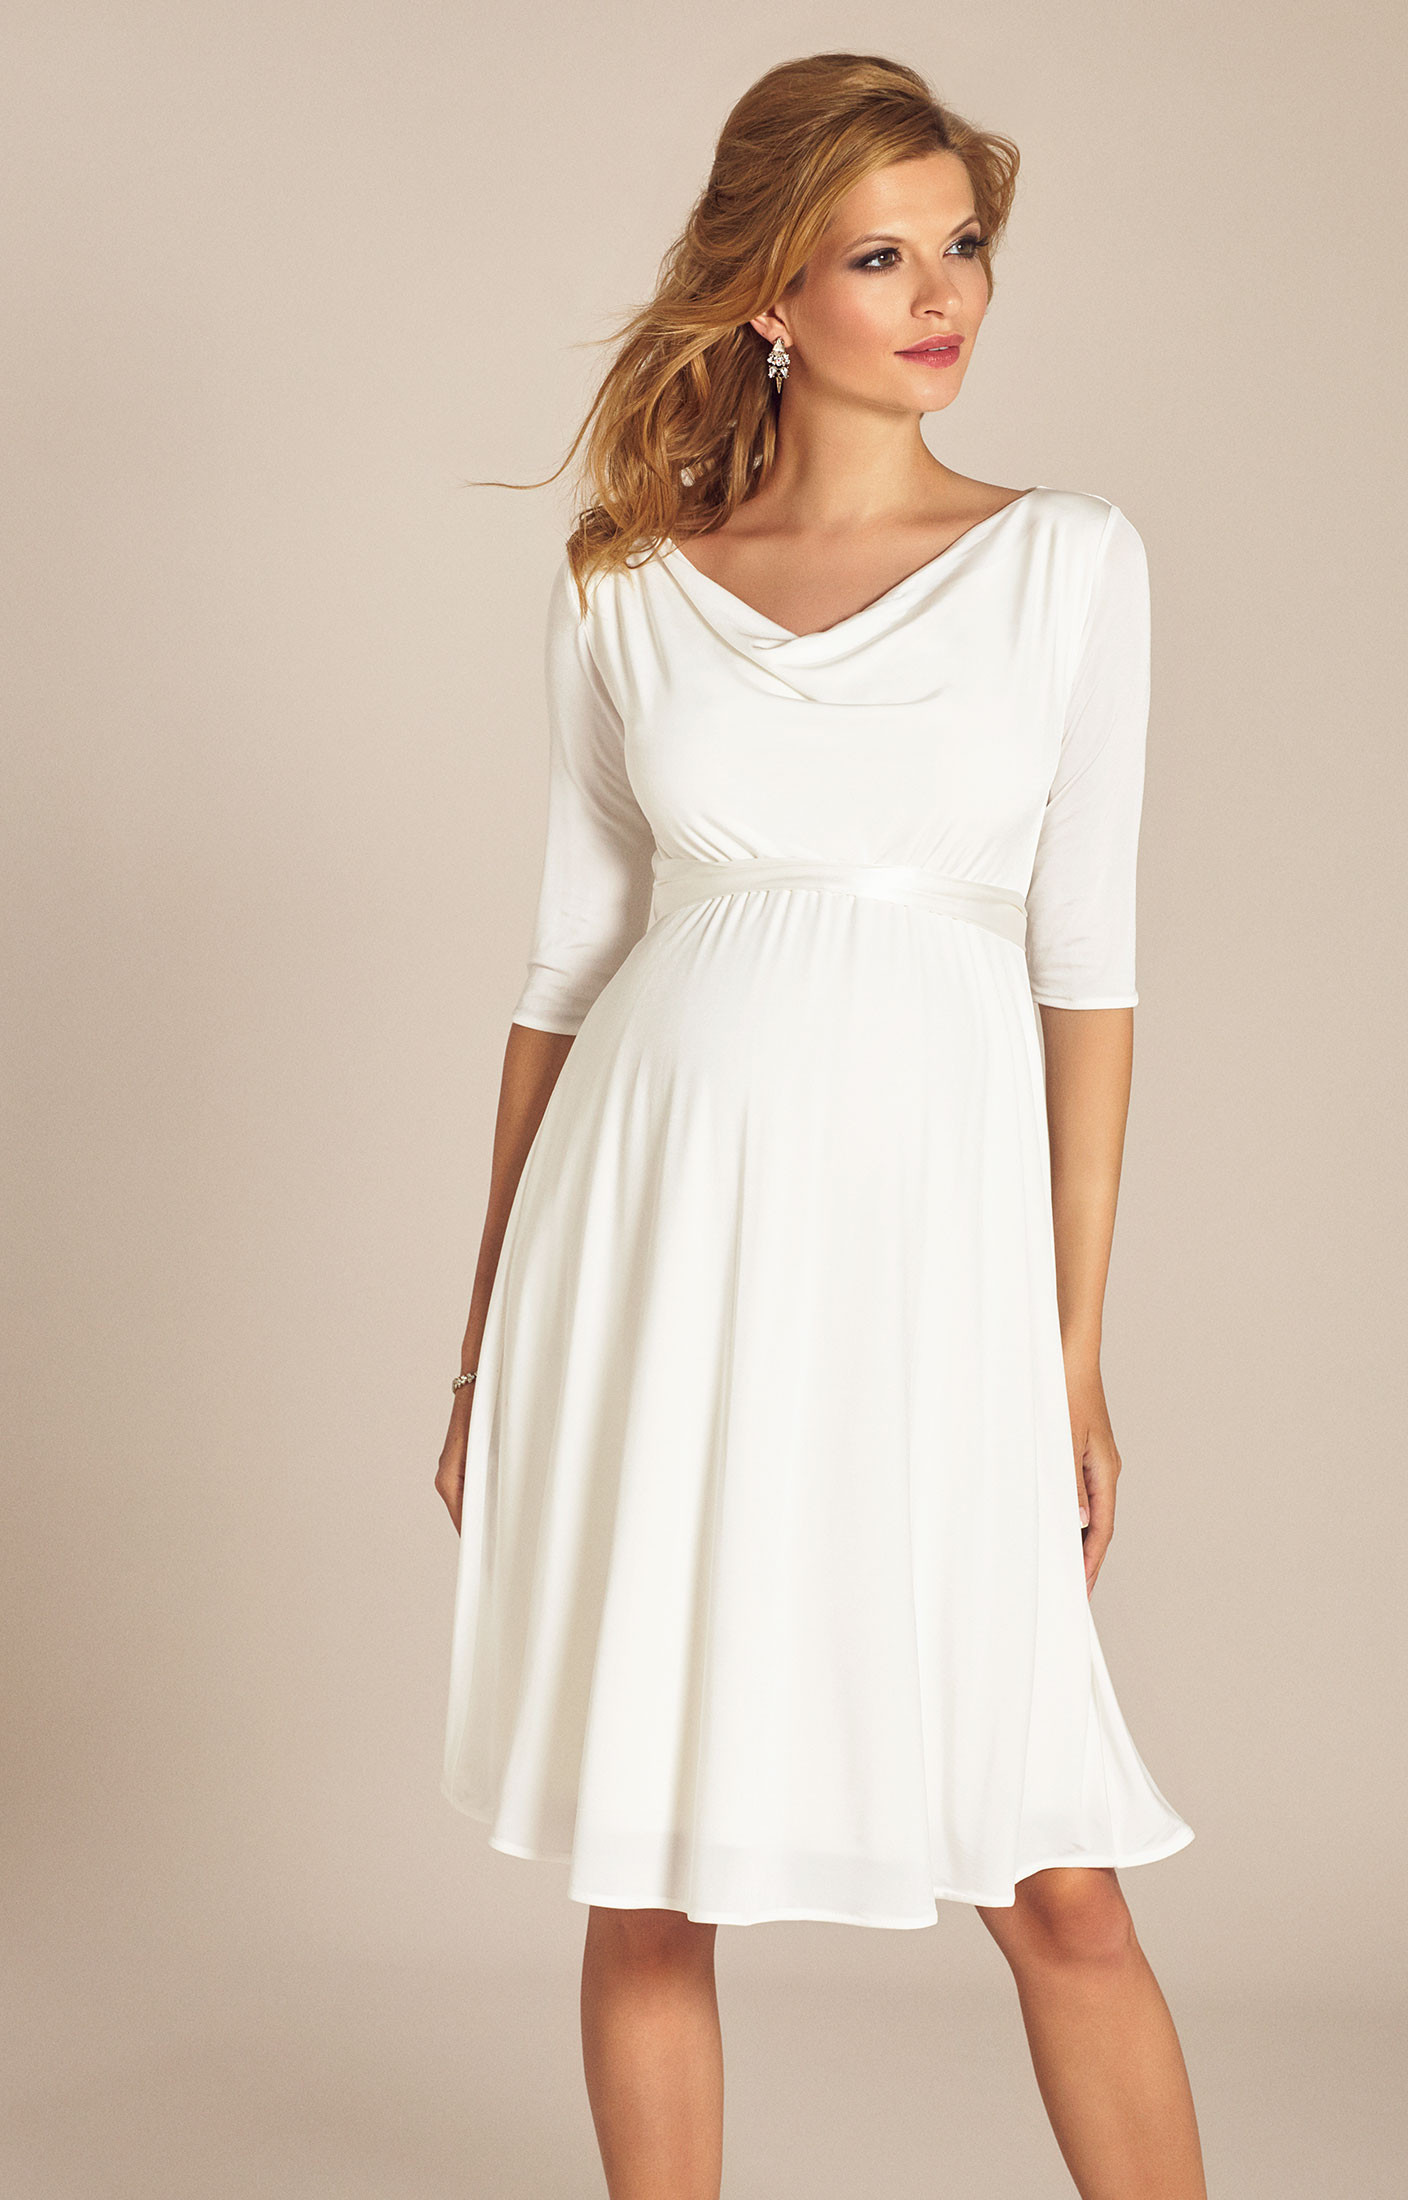 Hochzeitskleid Gast
 Hochzeitskleid kurz gast – Dein neuer Kleiderfotoblog